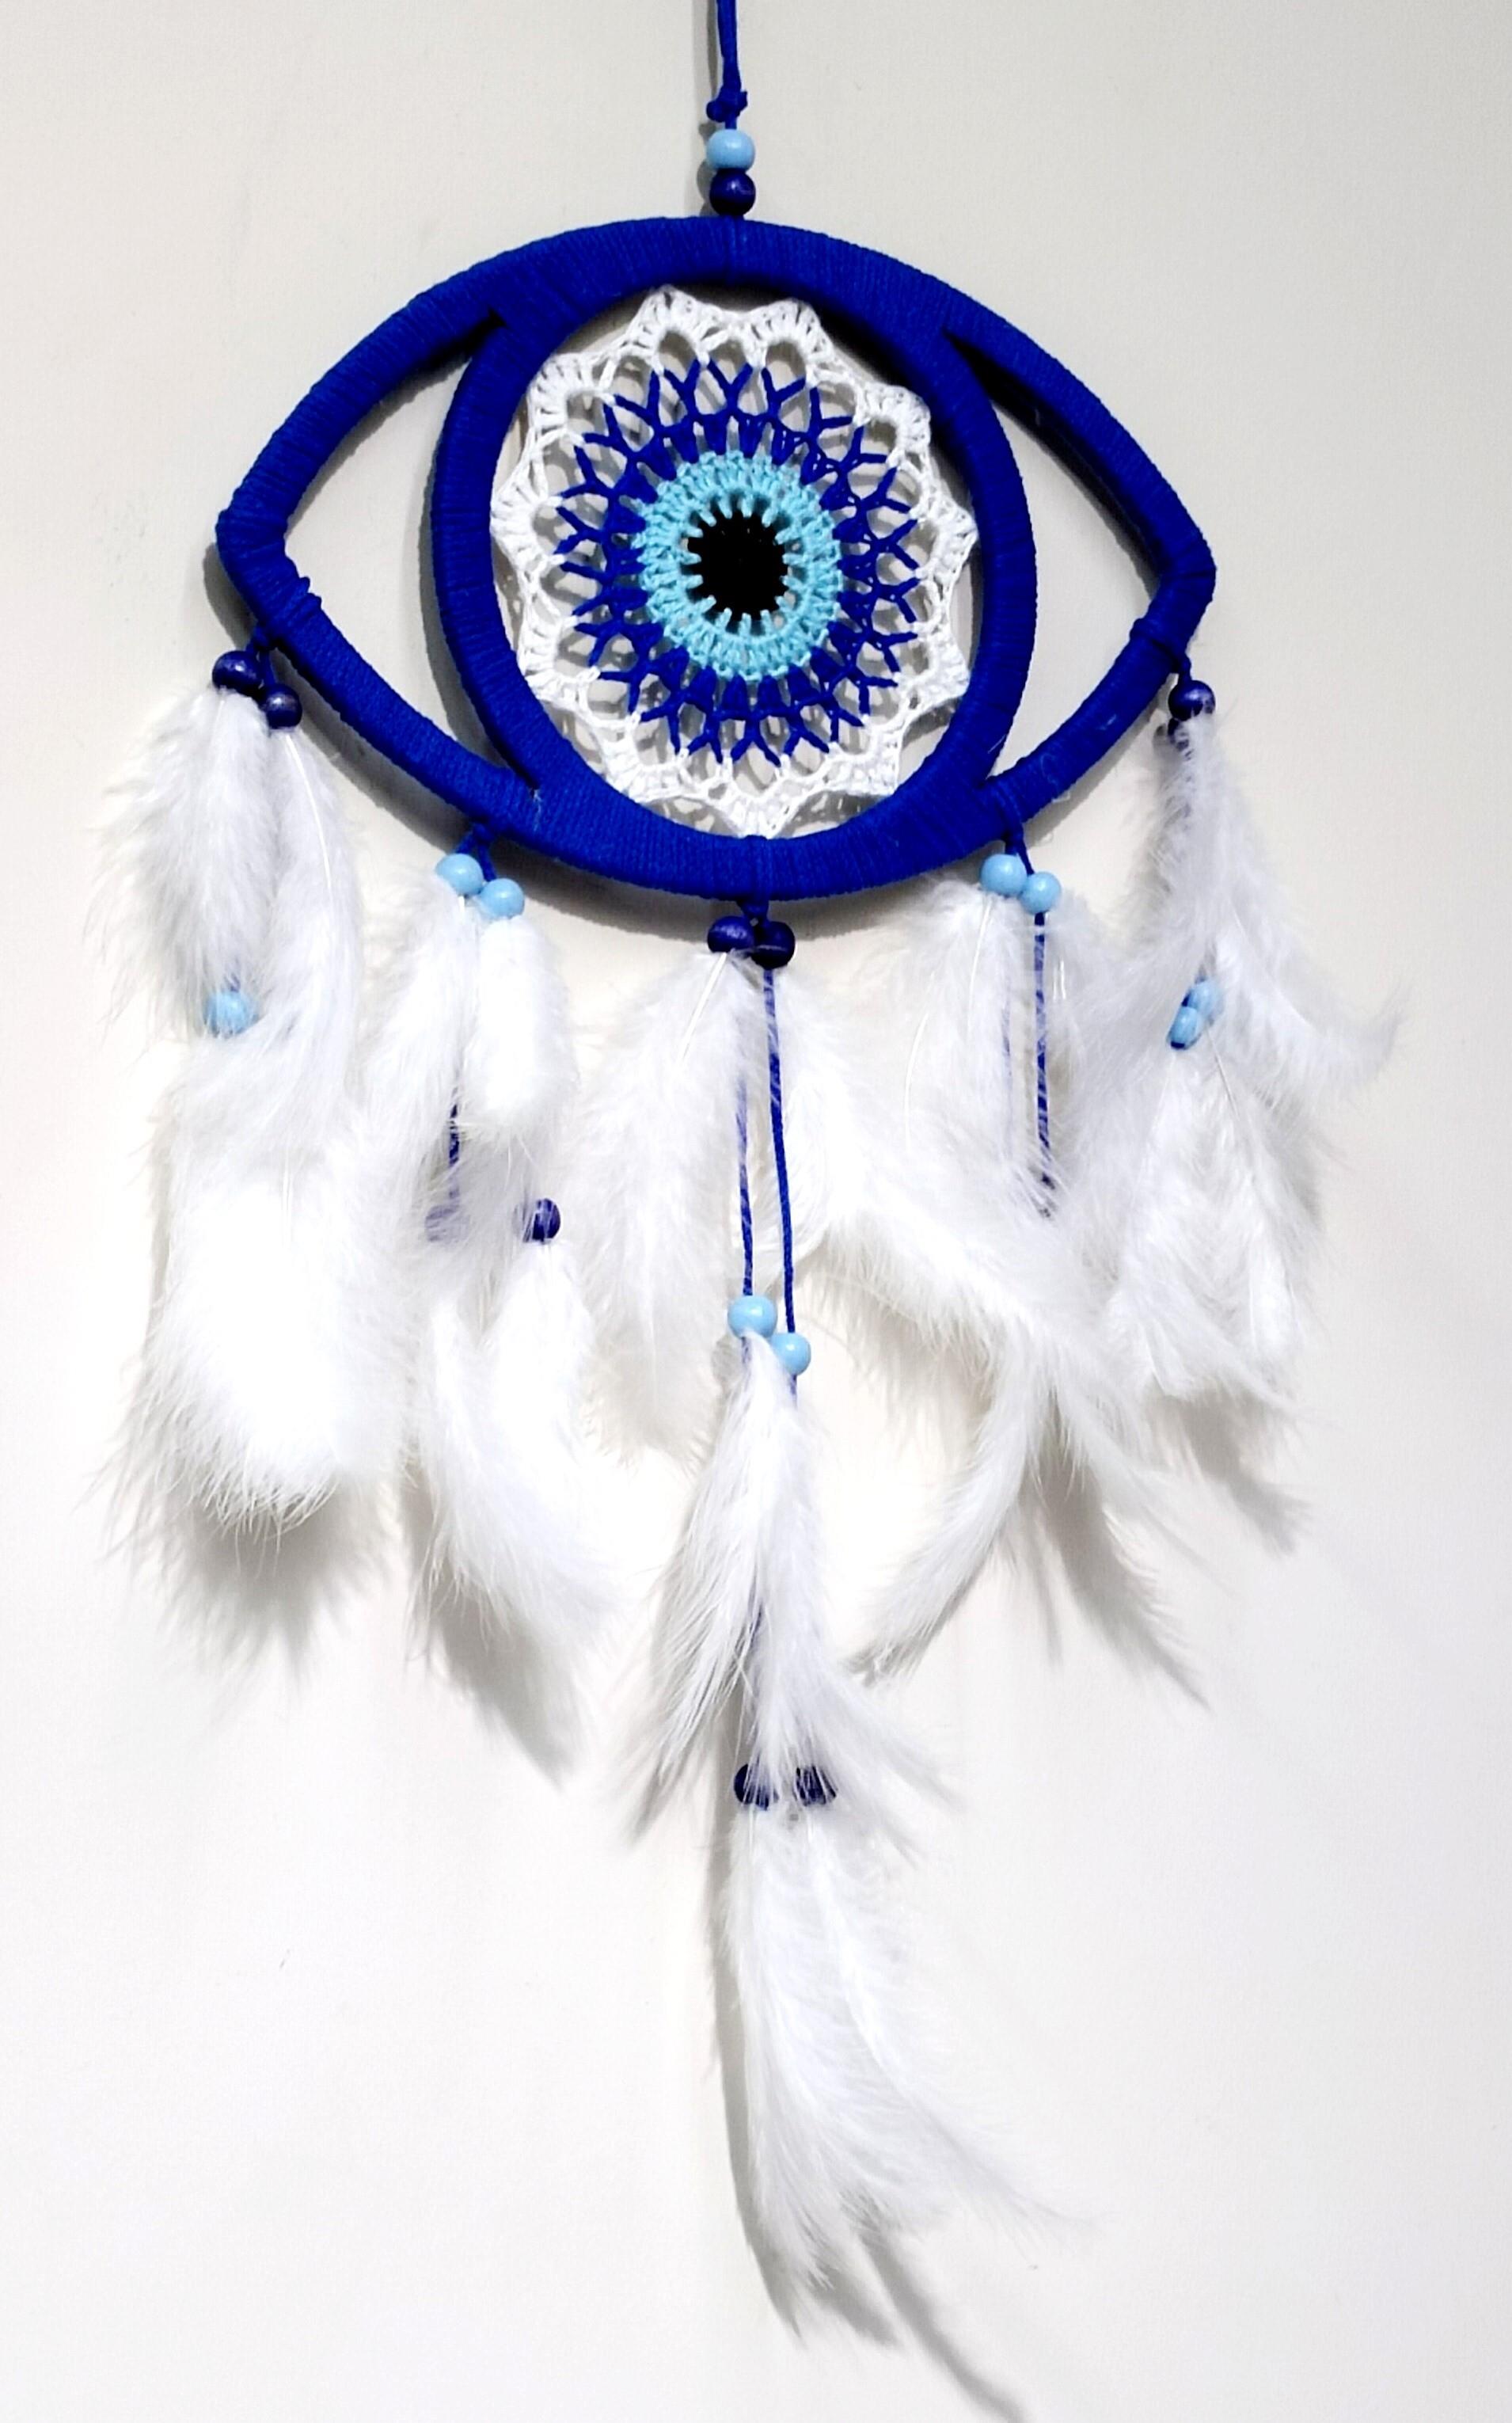 Göz Model Nazar Boncuğu Motifli Kuş Tüylü El Yapımı Mavi Düş Kapanı Duvar Dekoru